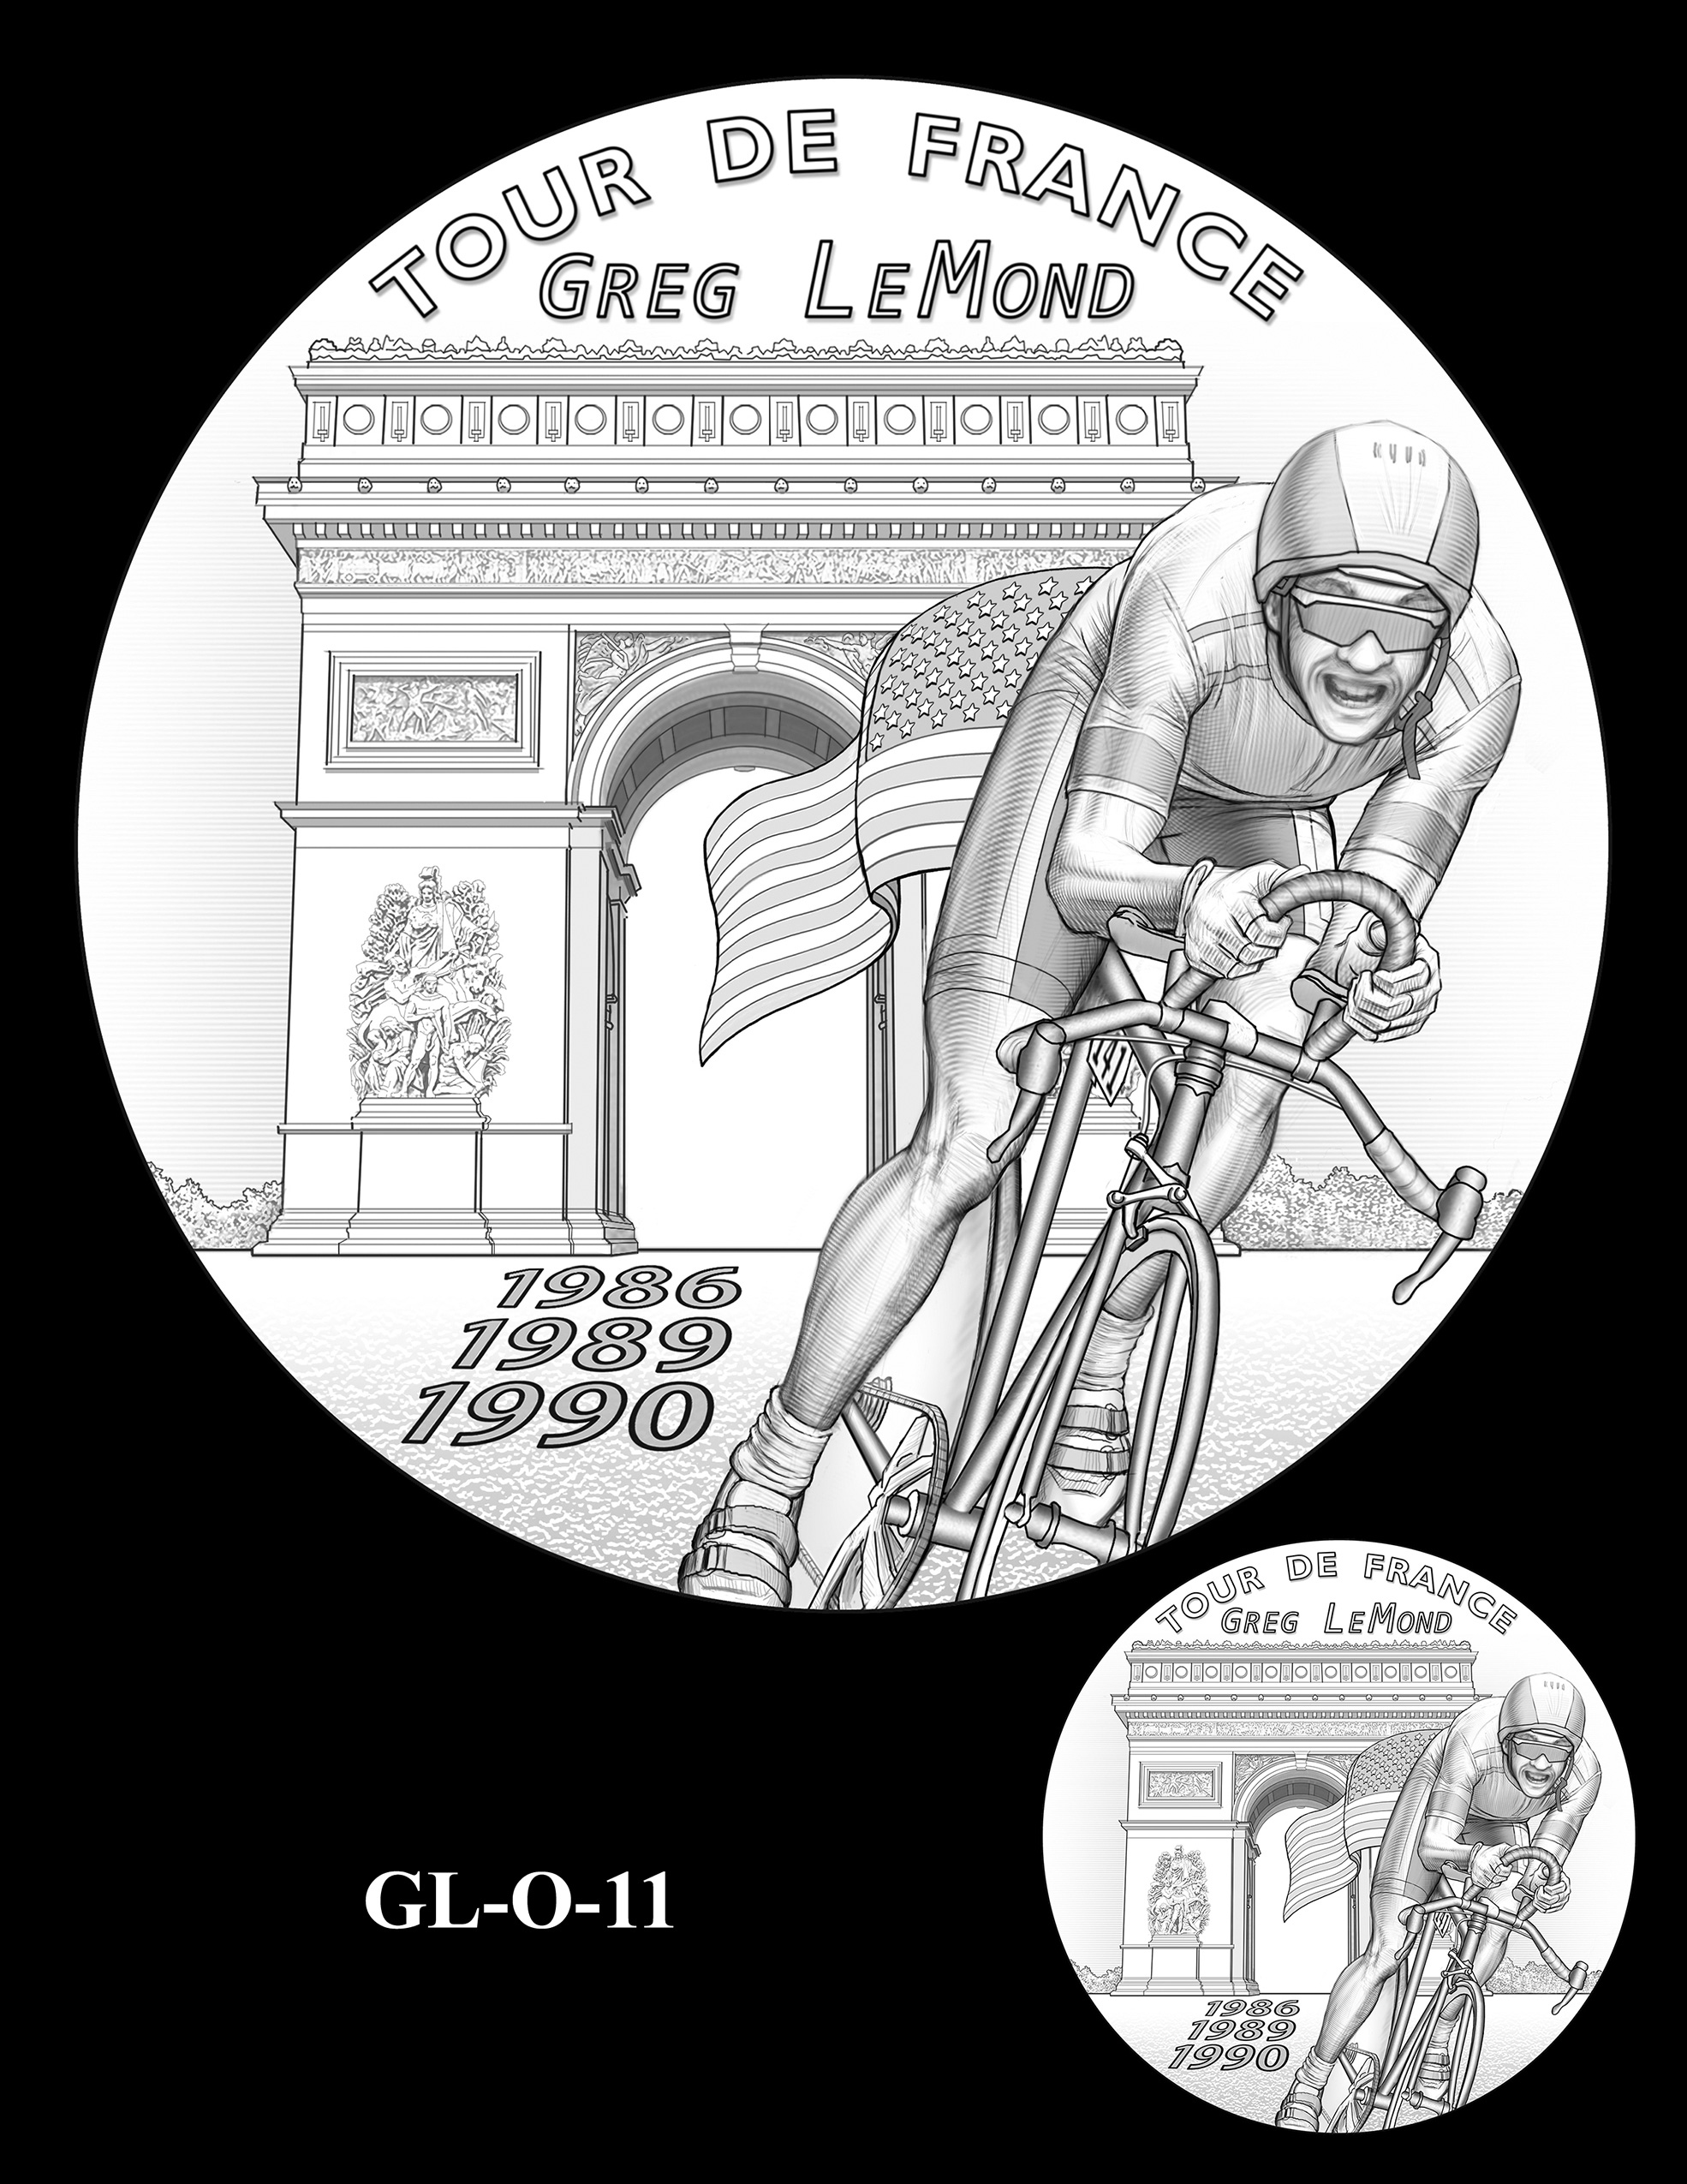 GL-O-11 -- Greg LeMond Congressional Gold Medal